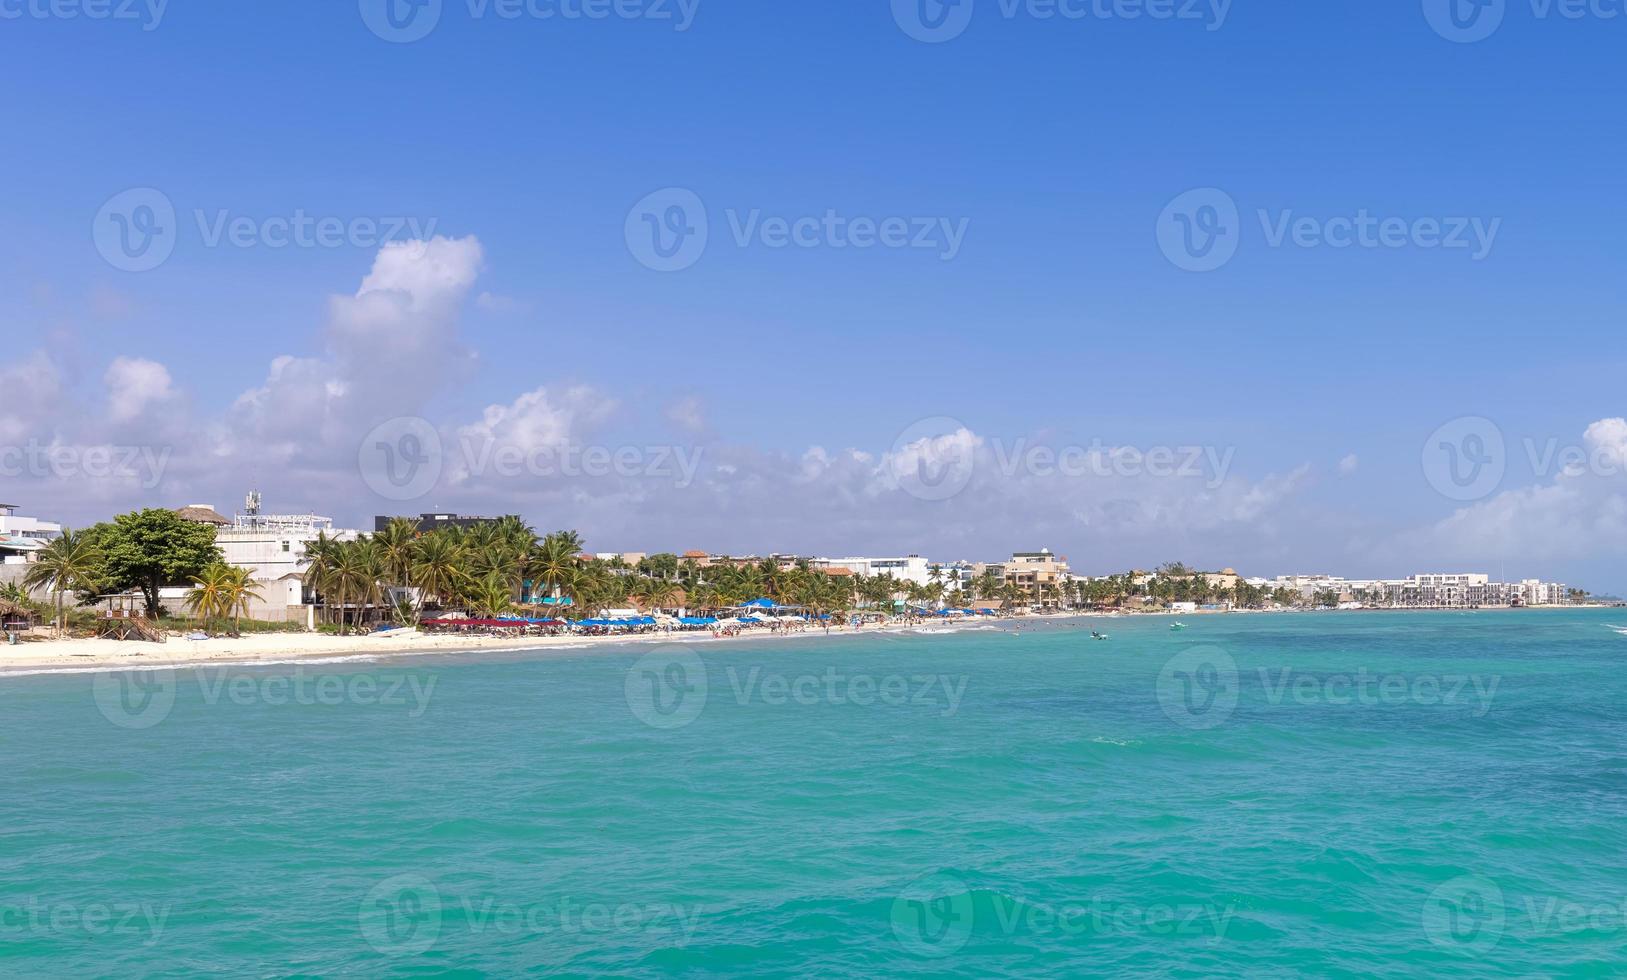 mexico playas escénicas playas y hoteles de playa del carmen, un popular destino turístico de vacaciones foto